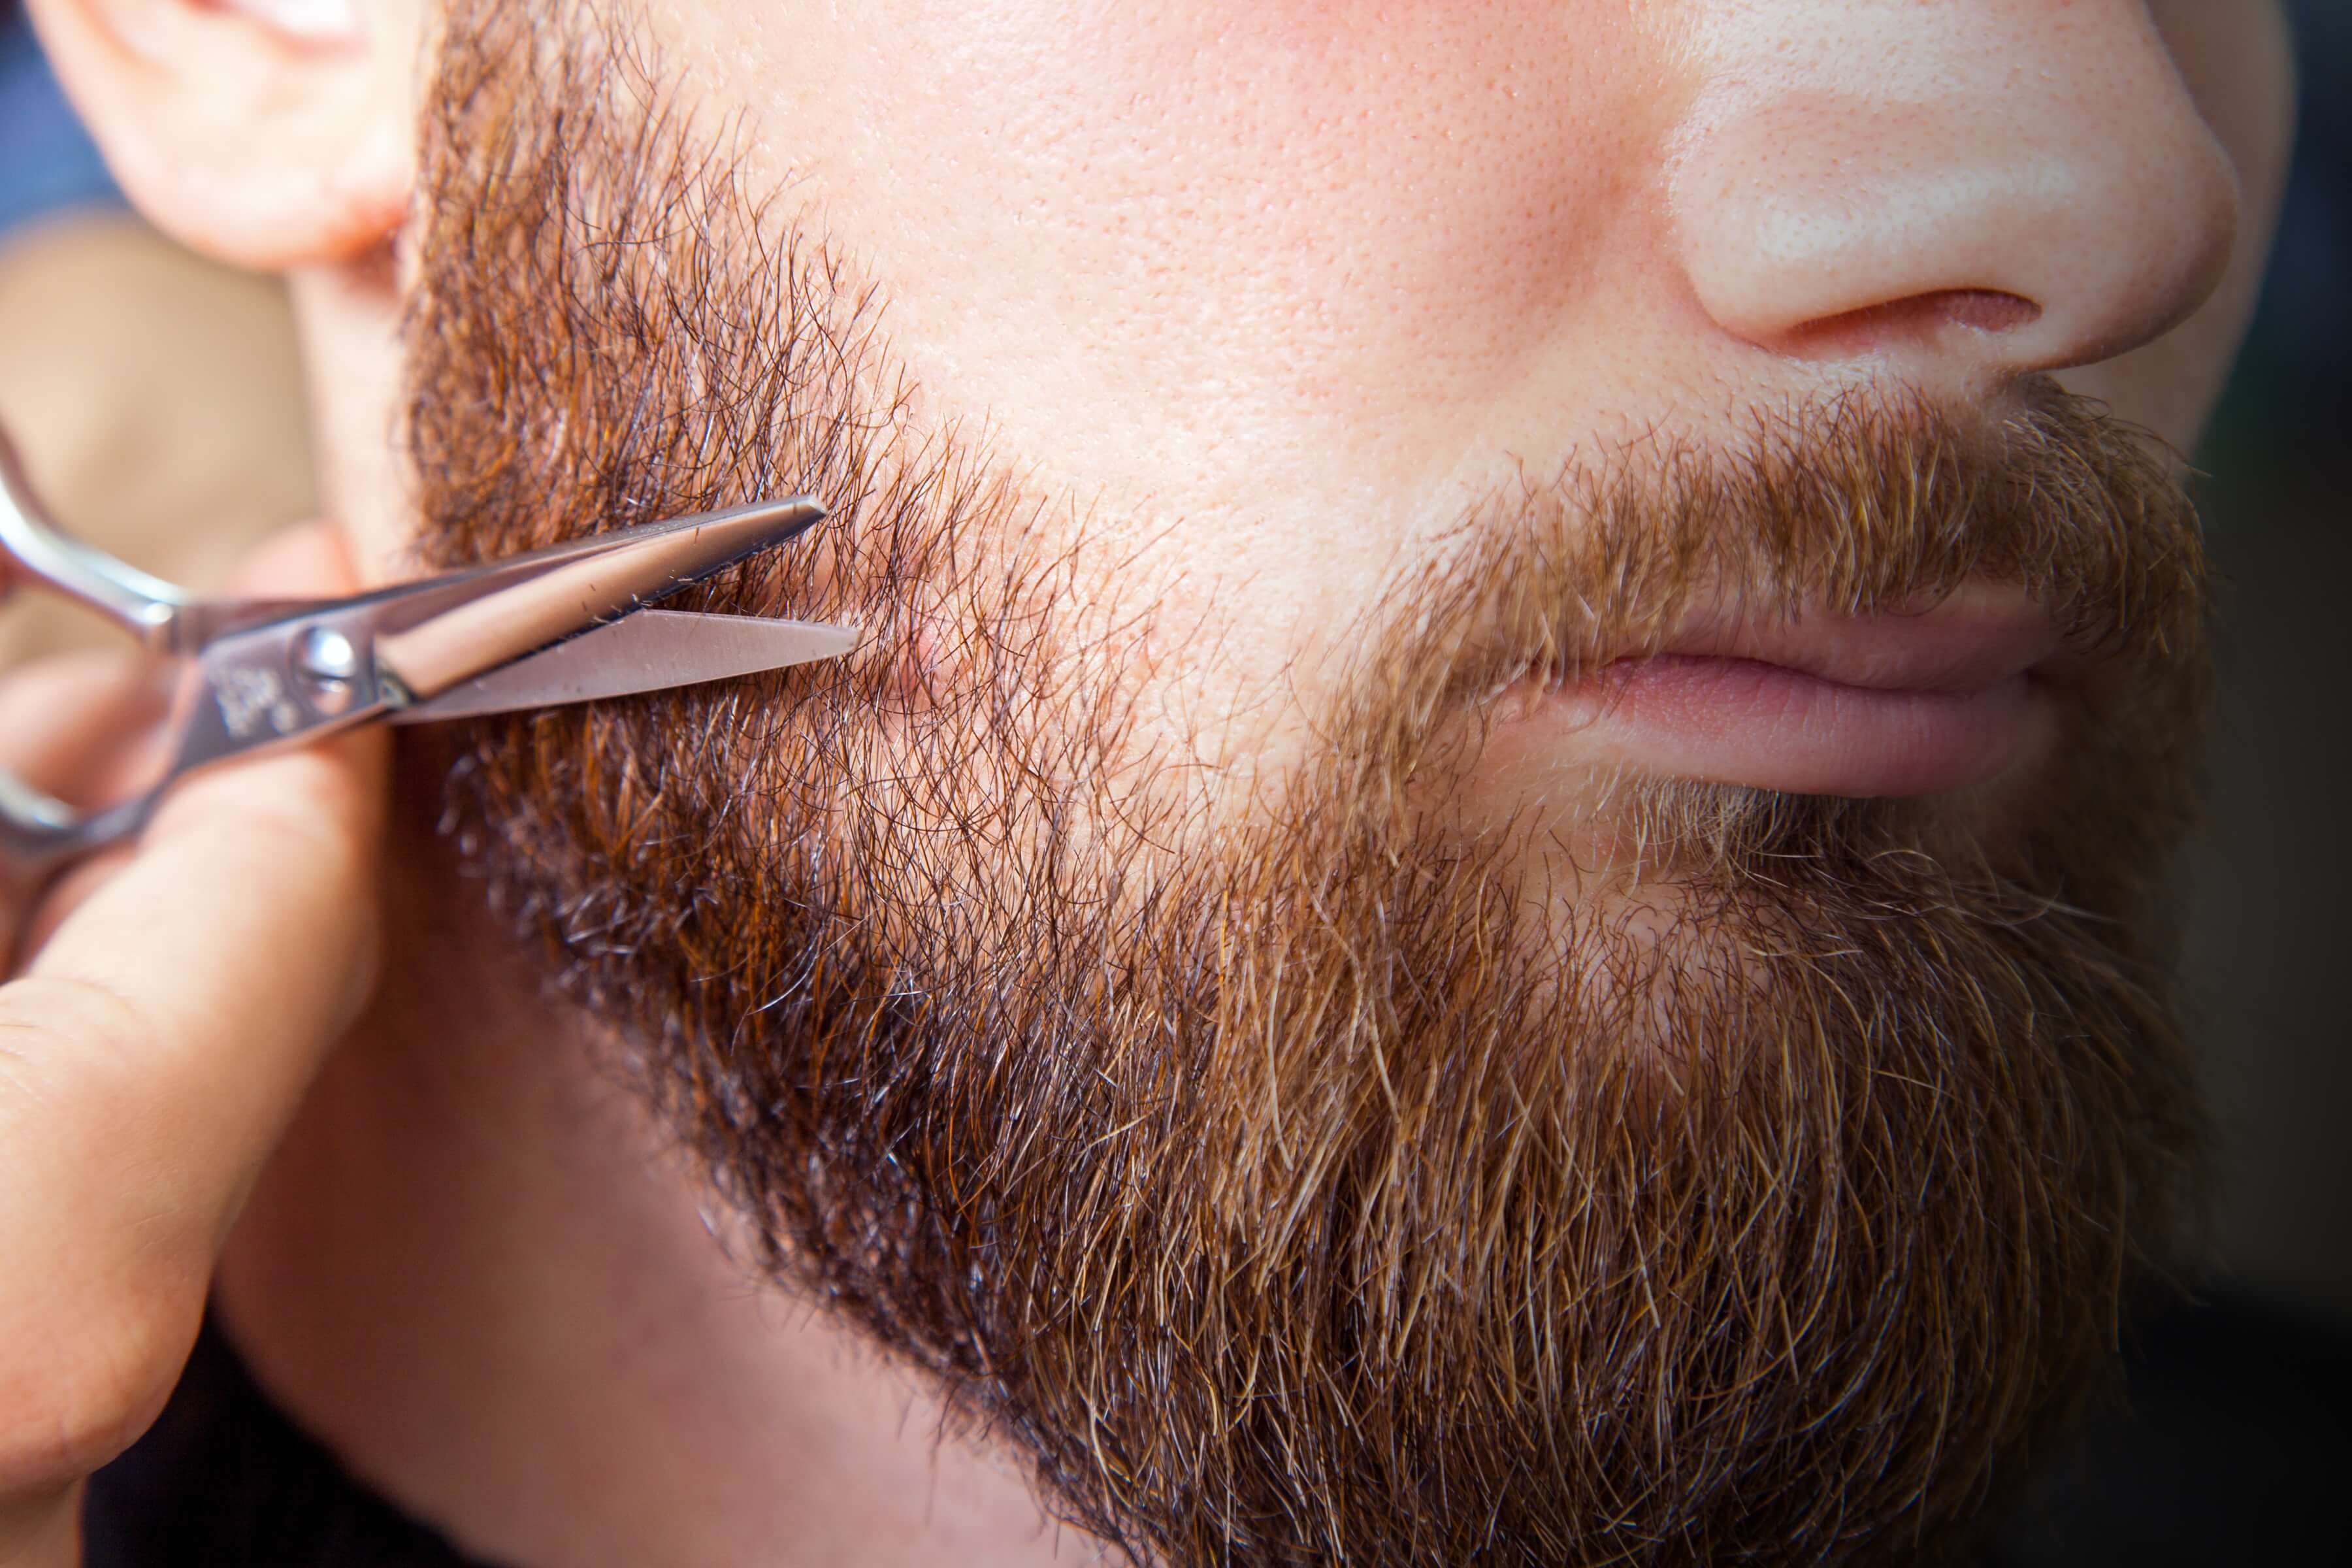 Борода украшает. Красивая борода. Бритье бороды. Стрижка бороды. Подравнивание бороды.